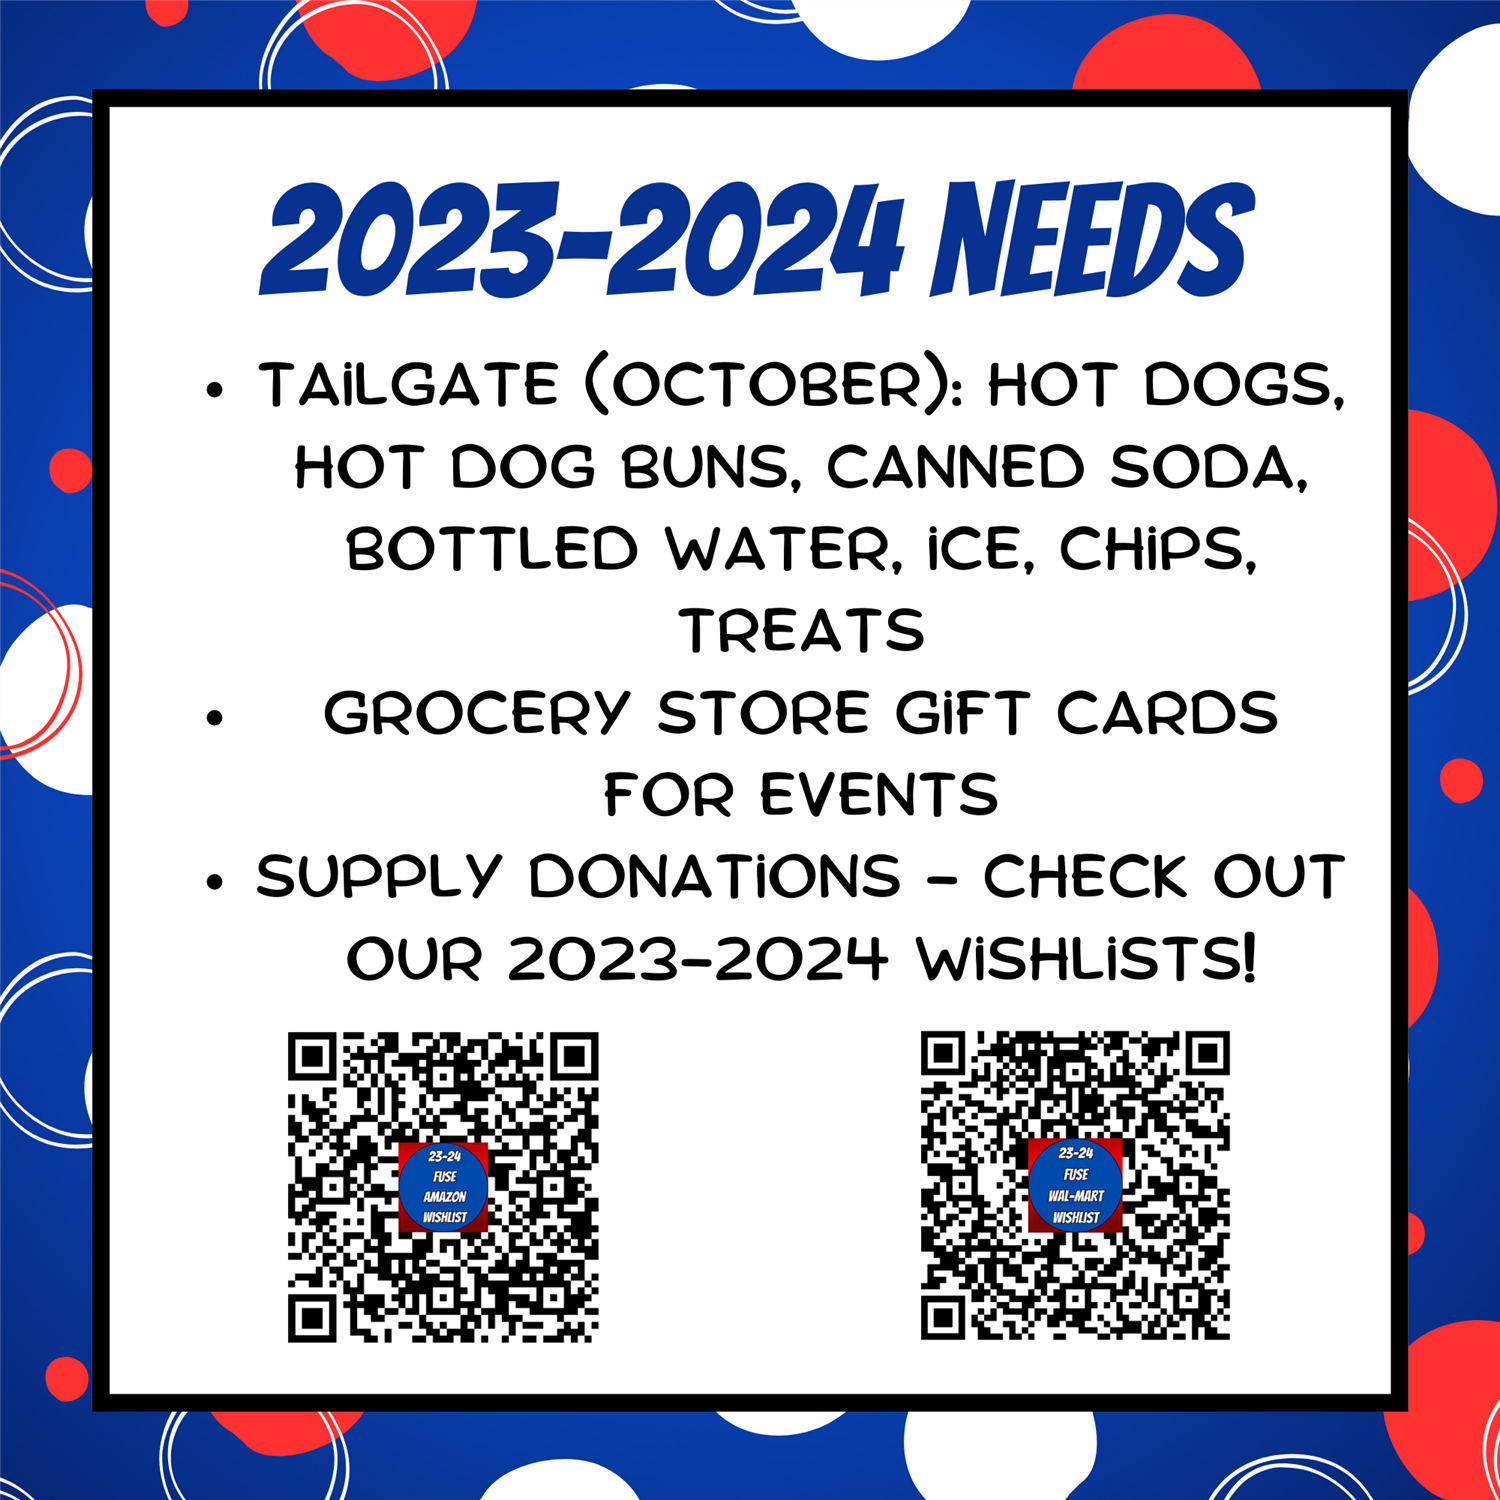 2023-2024 Needs